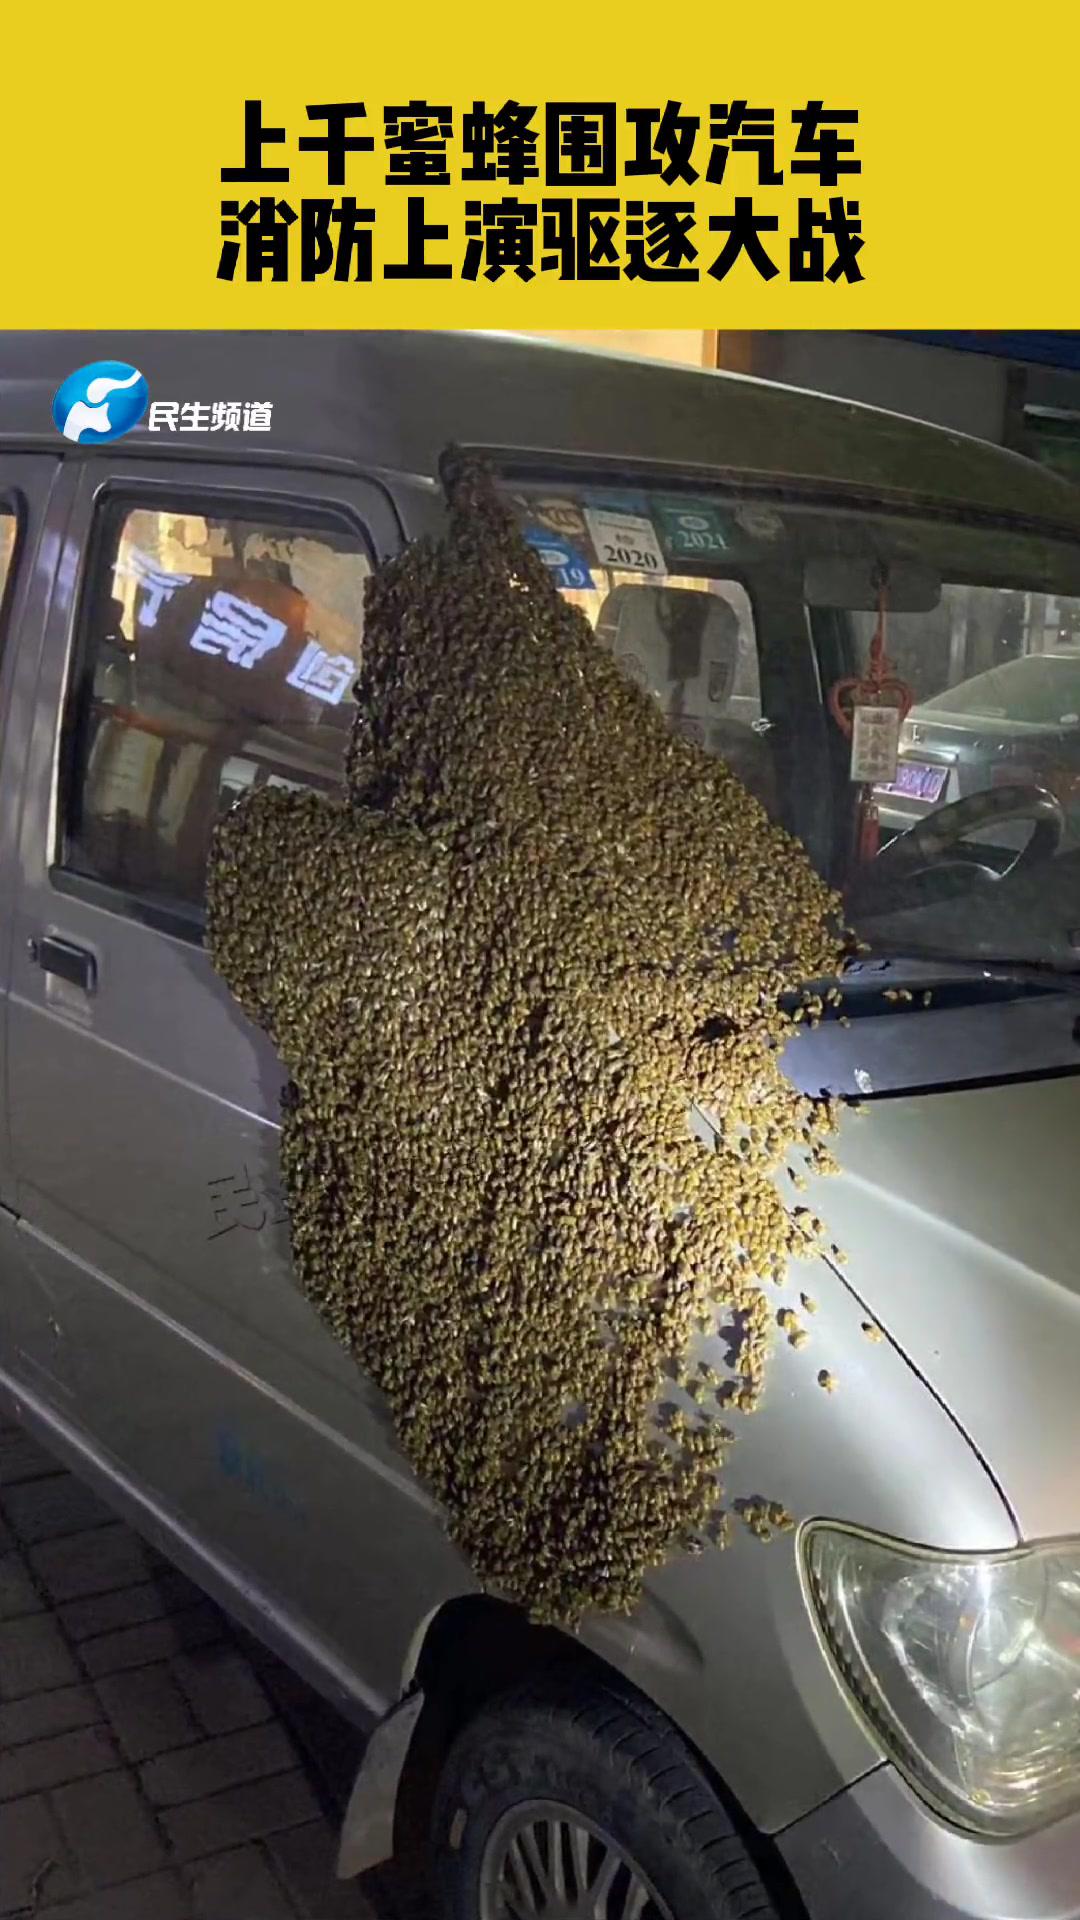 车上蜜蜂屎图片